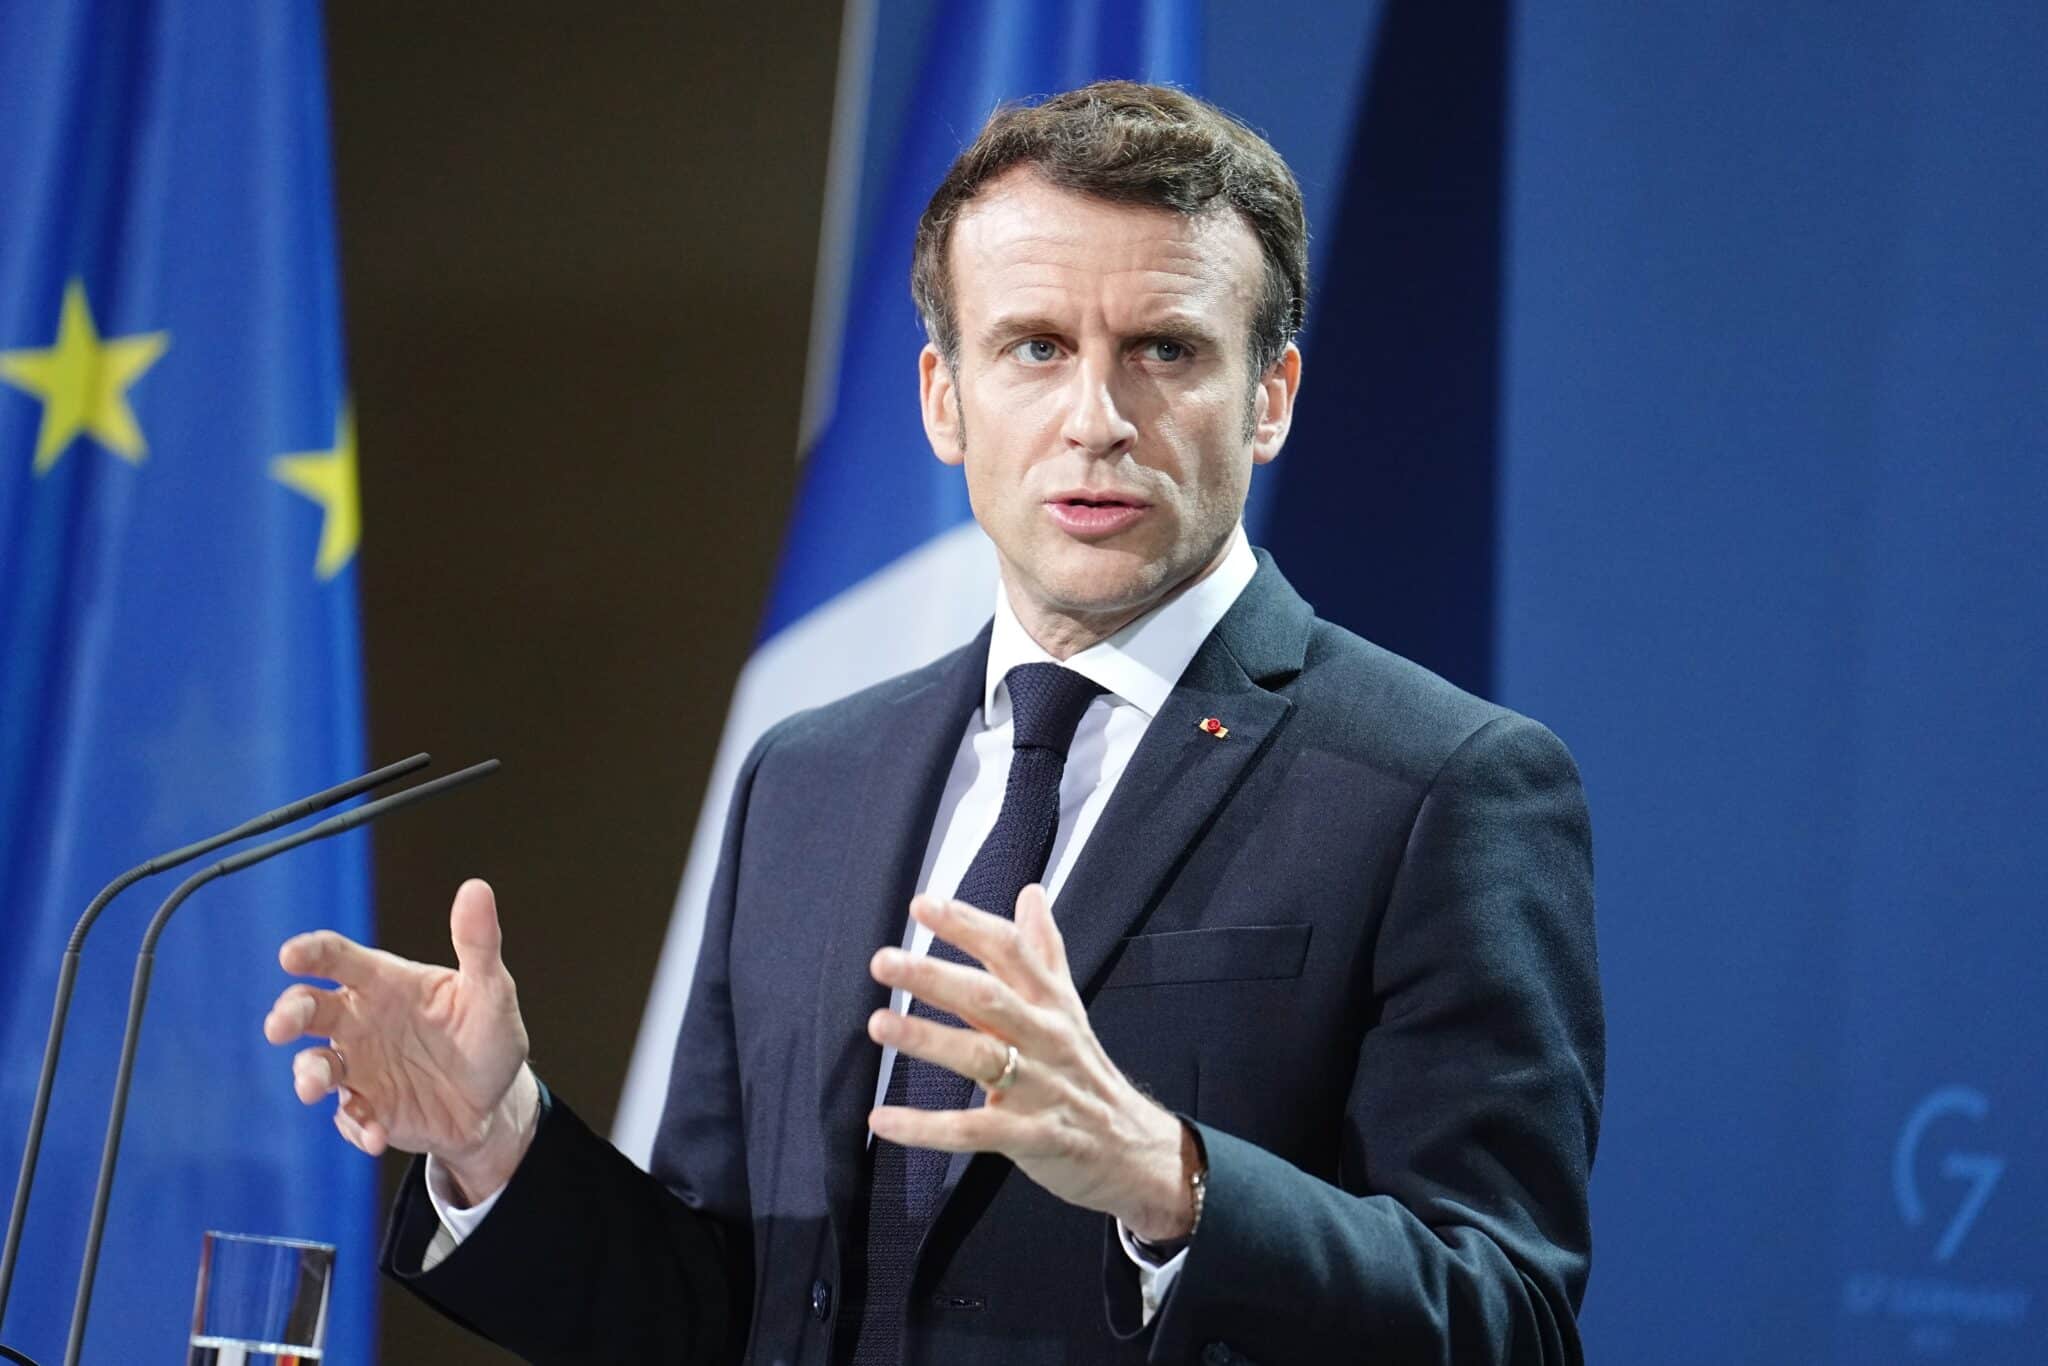 Imagen noticia Macron permanecerá cinco años más en la presidencia de Francia